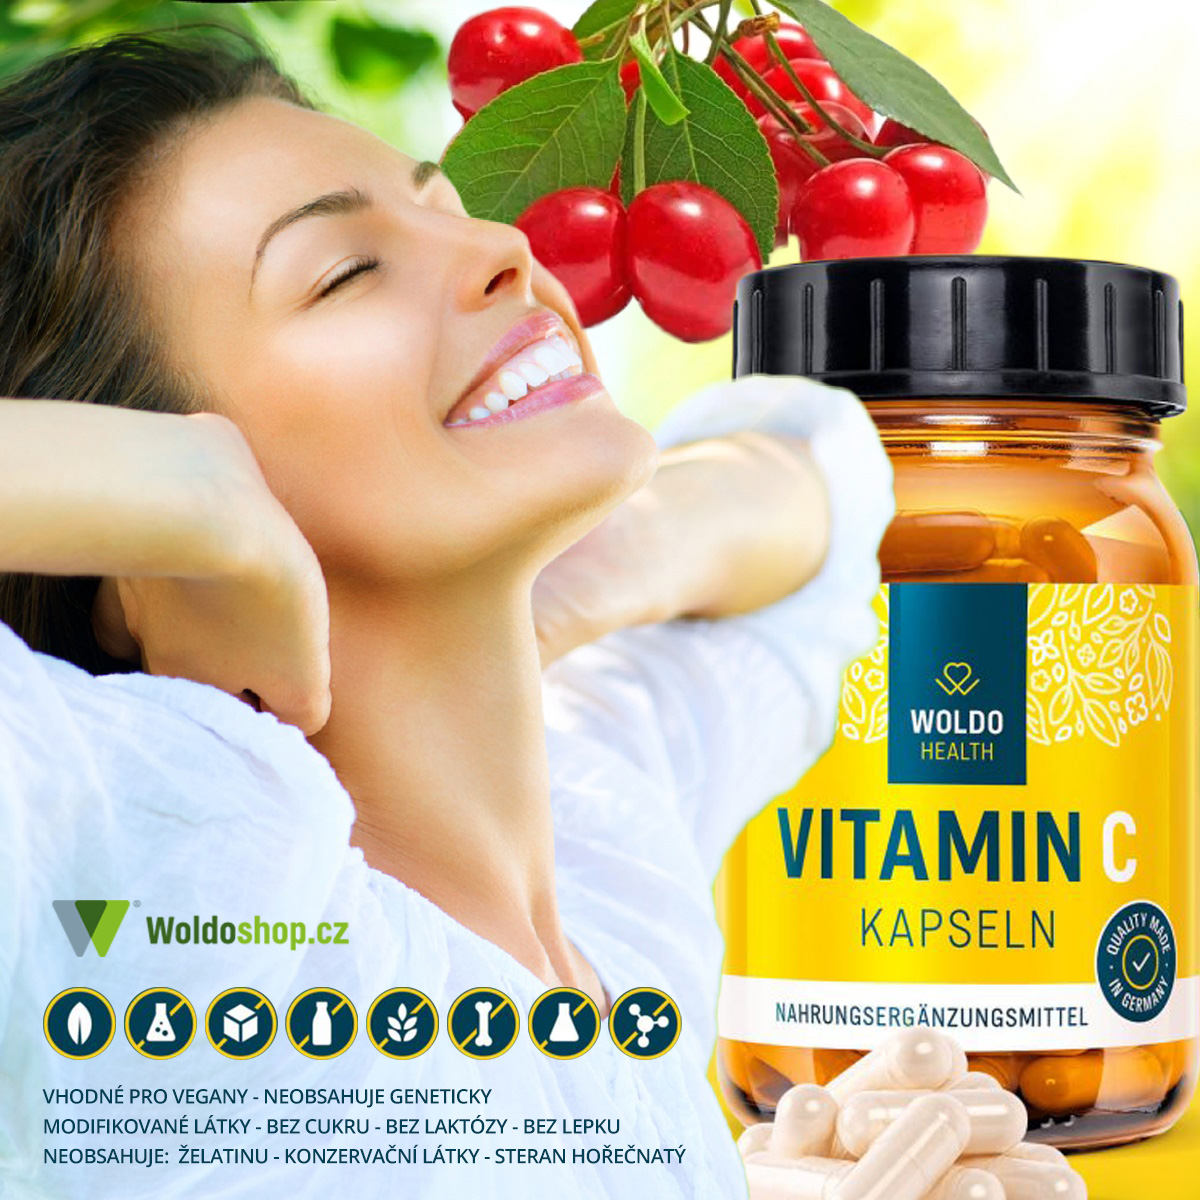 Vitamín C je důležitý nejen pro naše zdraví a imunitu, ale rovněž pro krásu. 